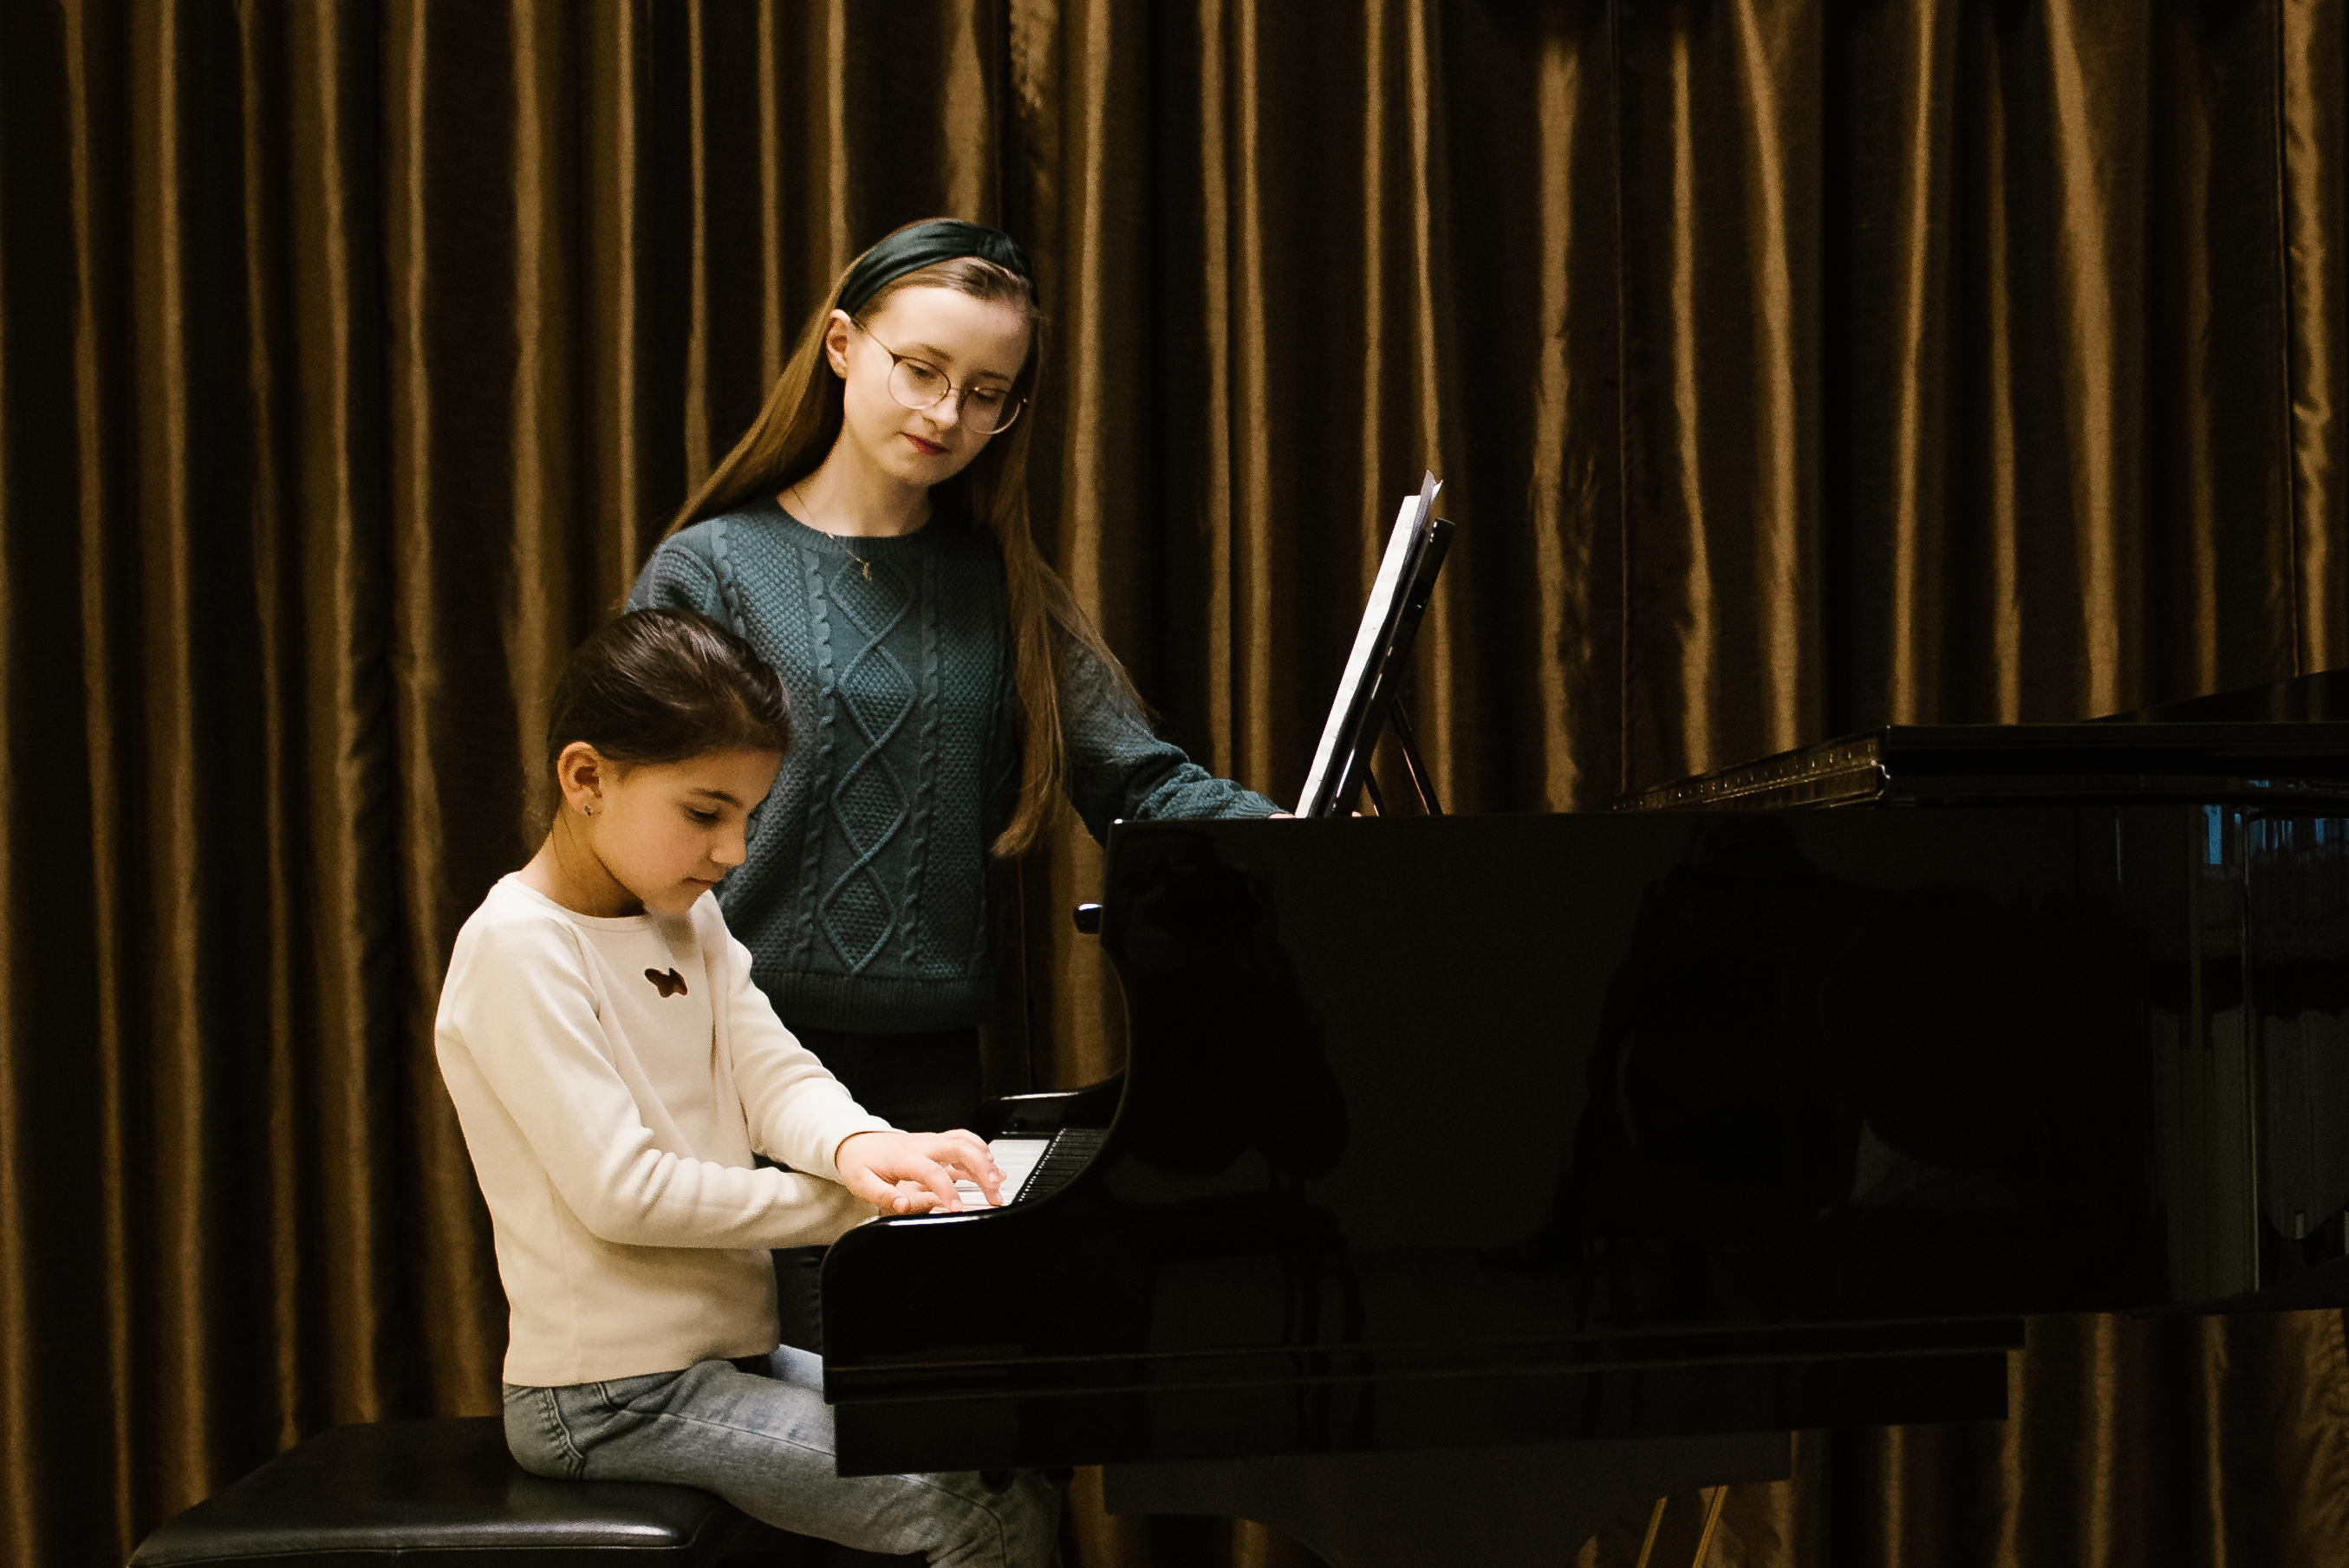 Na zdjęciu znajduje się pani Julia Rumińska-Wyrwa oraz uczennica Amelia Stefanko. Nauczycielka stoi przy czarnym fortepianie, przy którym siedzi i na którym gra uczennica. 